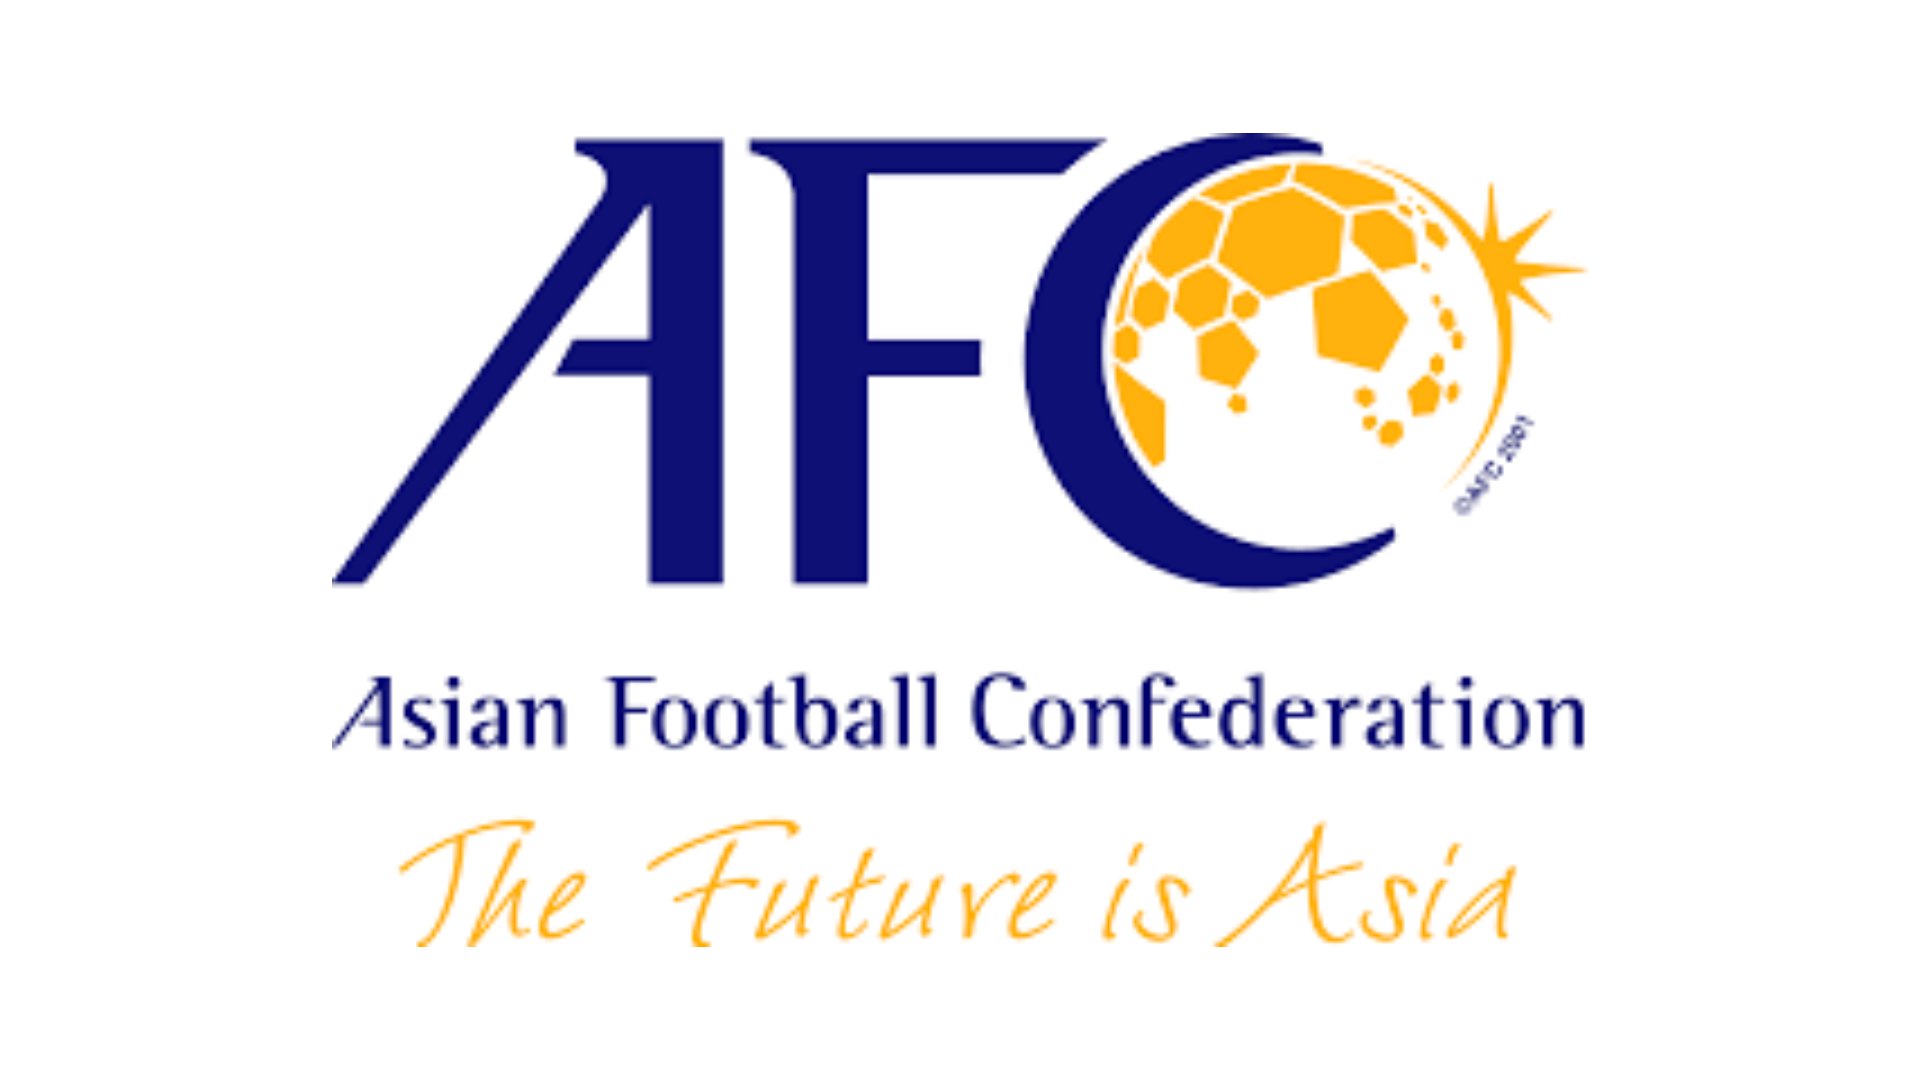 تغييرات جذرية "ديناميكية" في دوري الأبطال وكأس الاتحاد الآسيوي